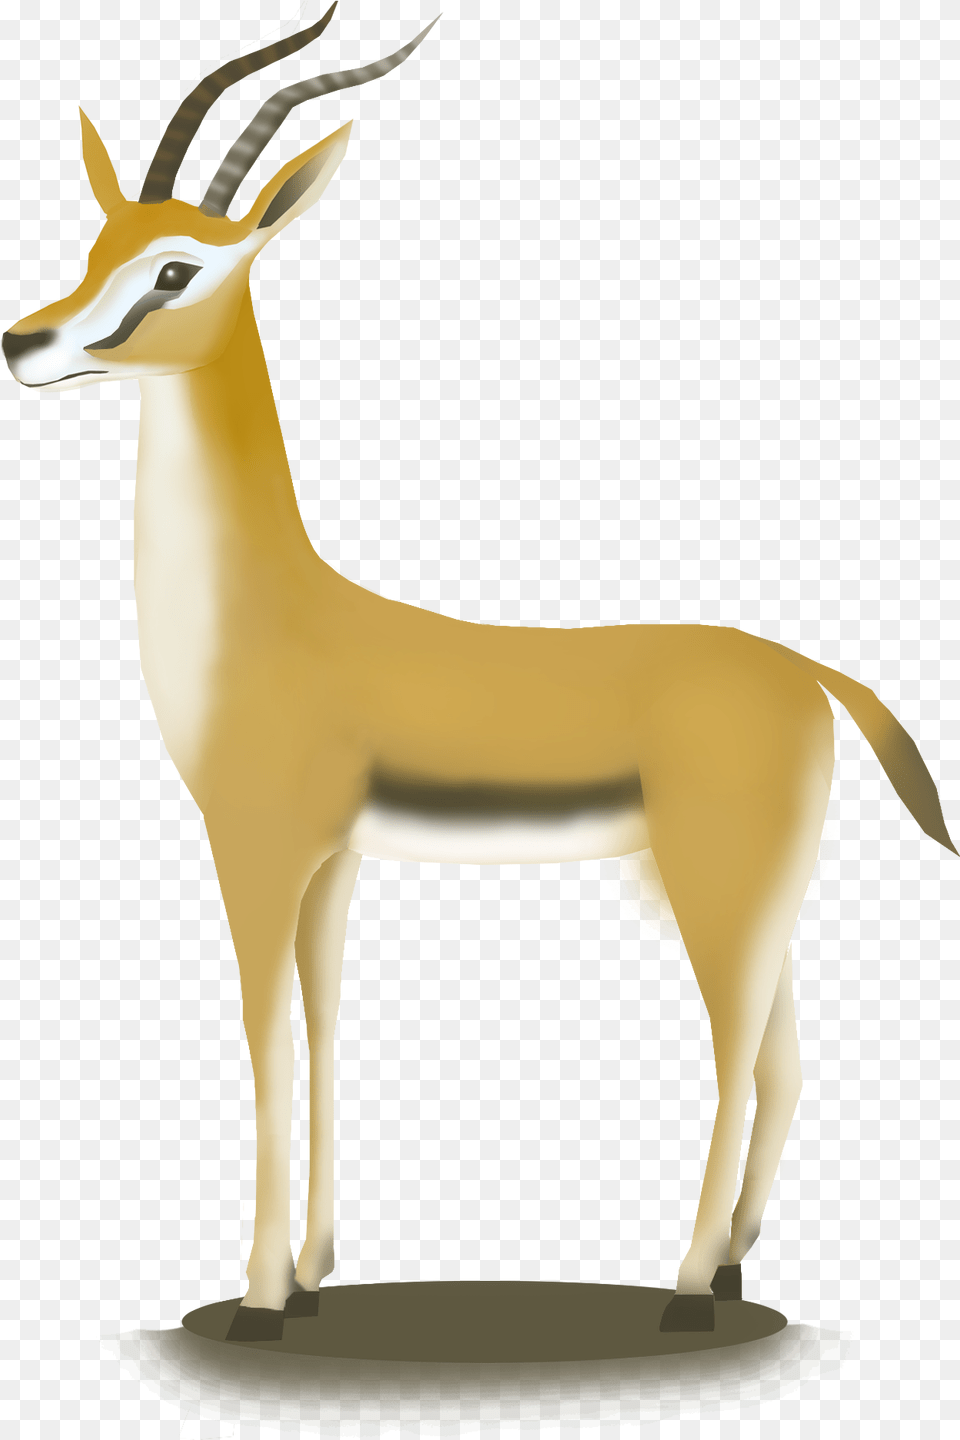 Hand Drawn African Antelope Hd Animal, Wildlife, Gazelle, Mammal, Impala Free Png Download